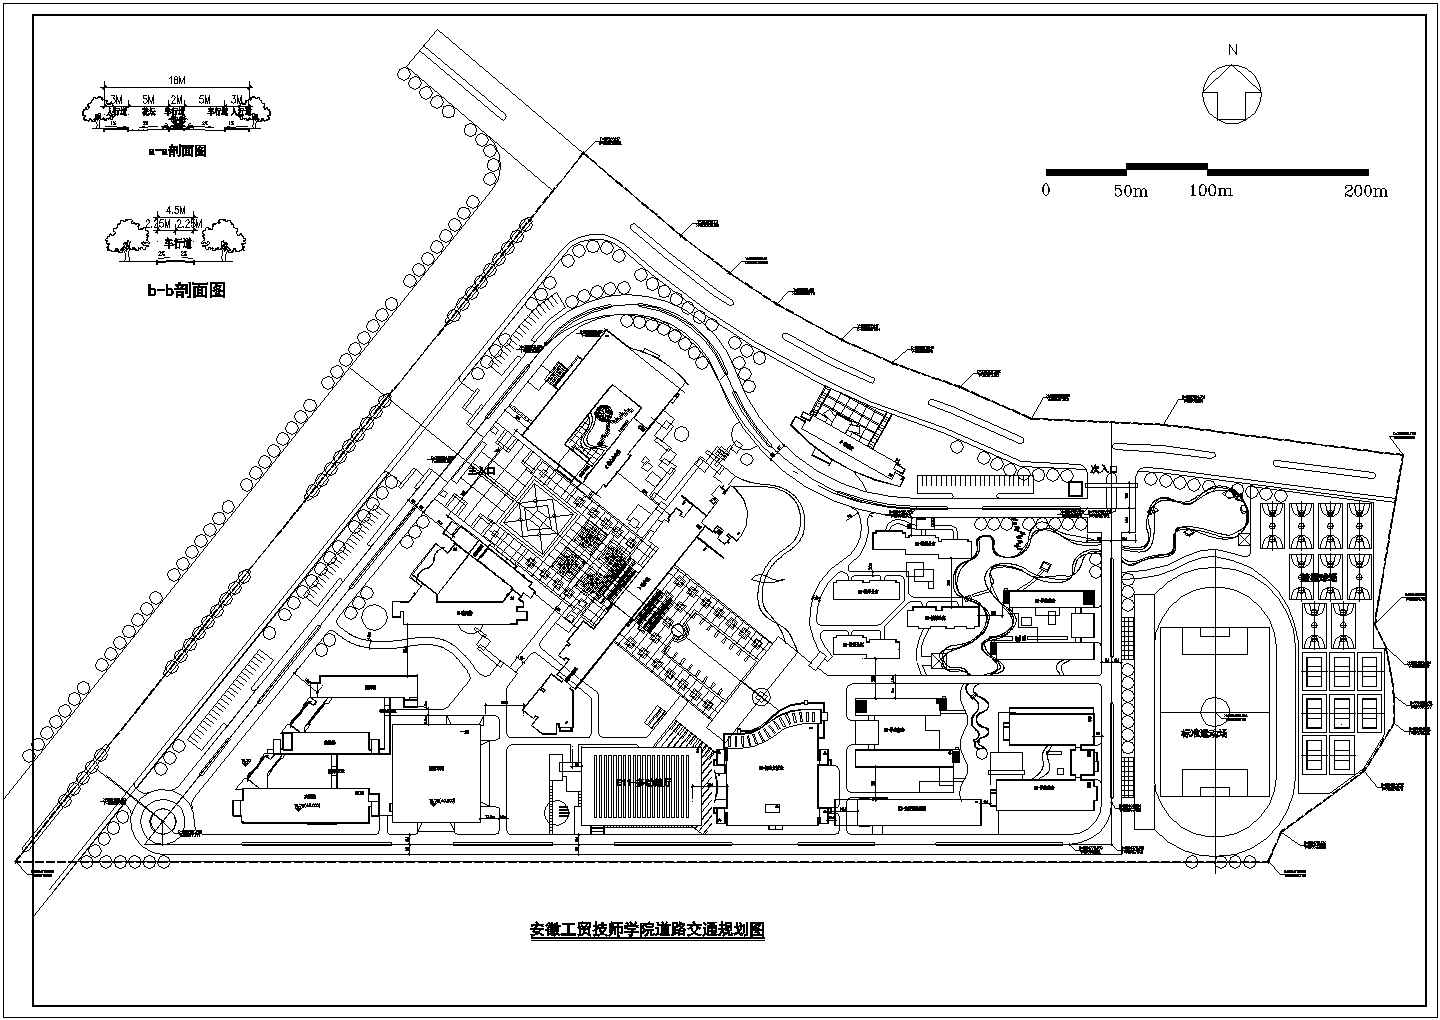 马鞍山工贸技工学校CAD建筑设计总体规划图纸